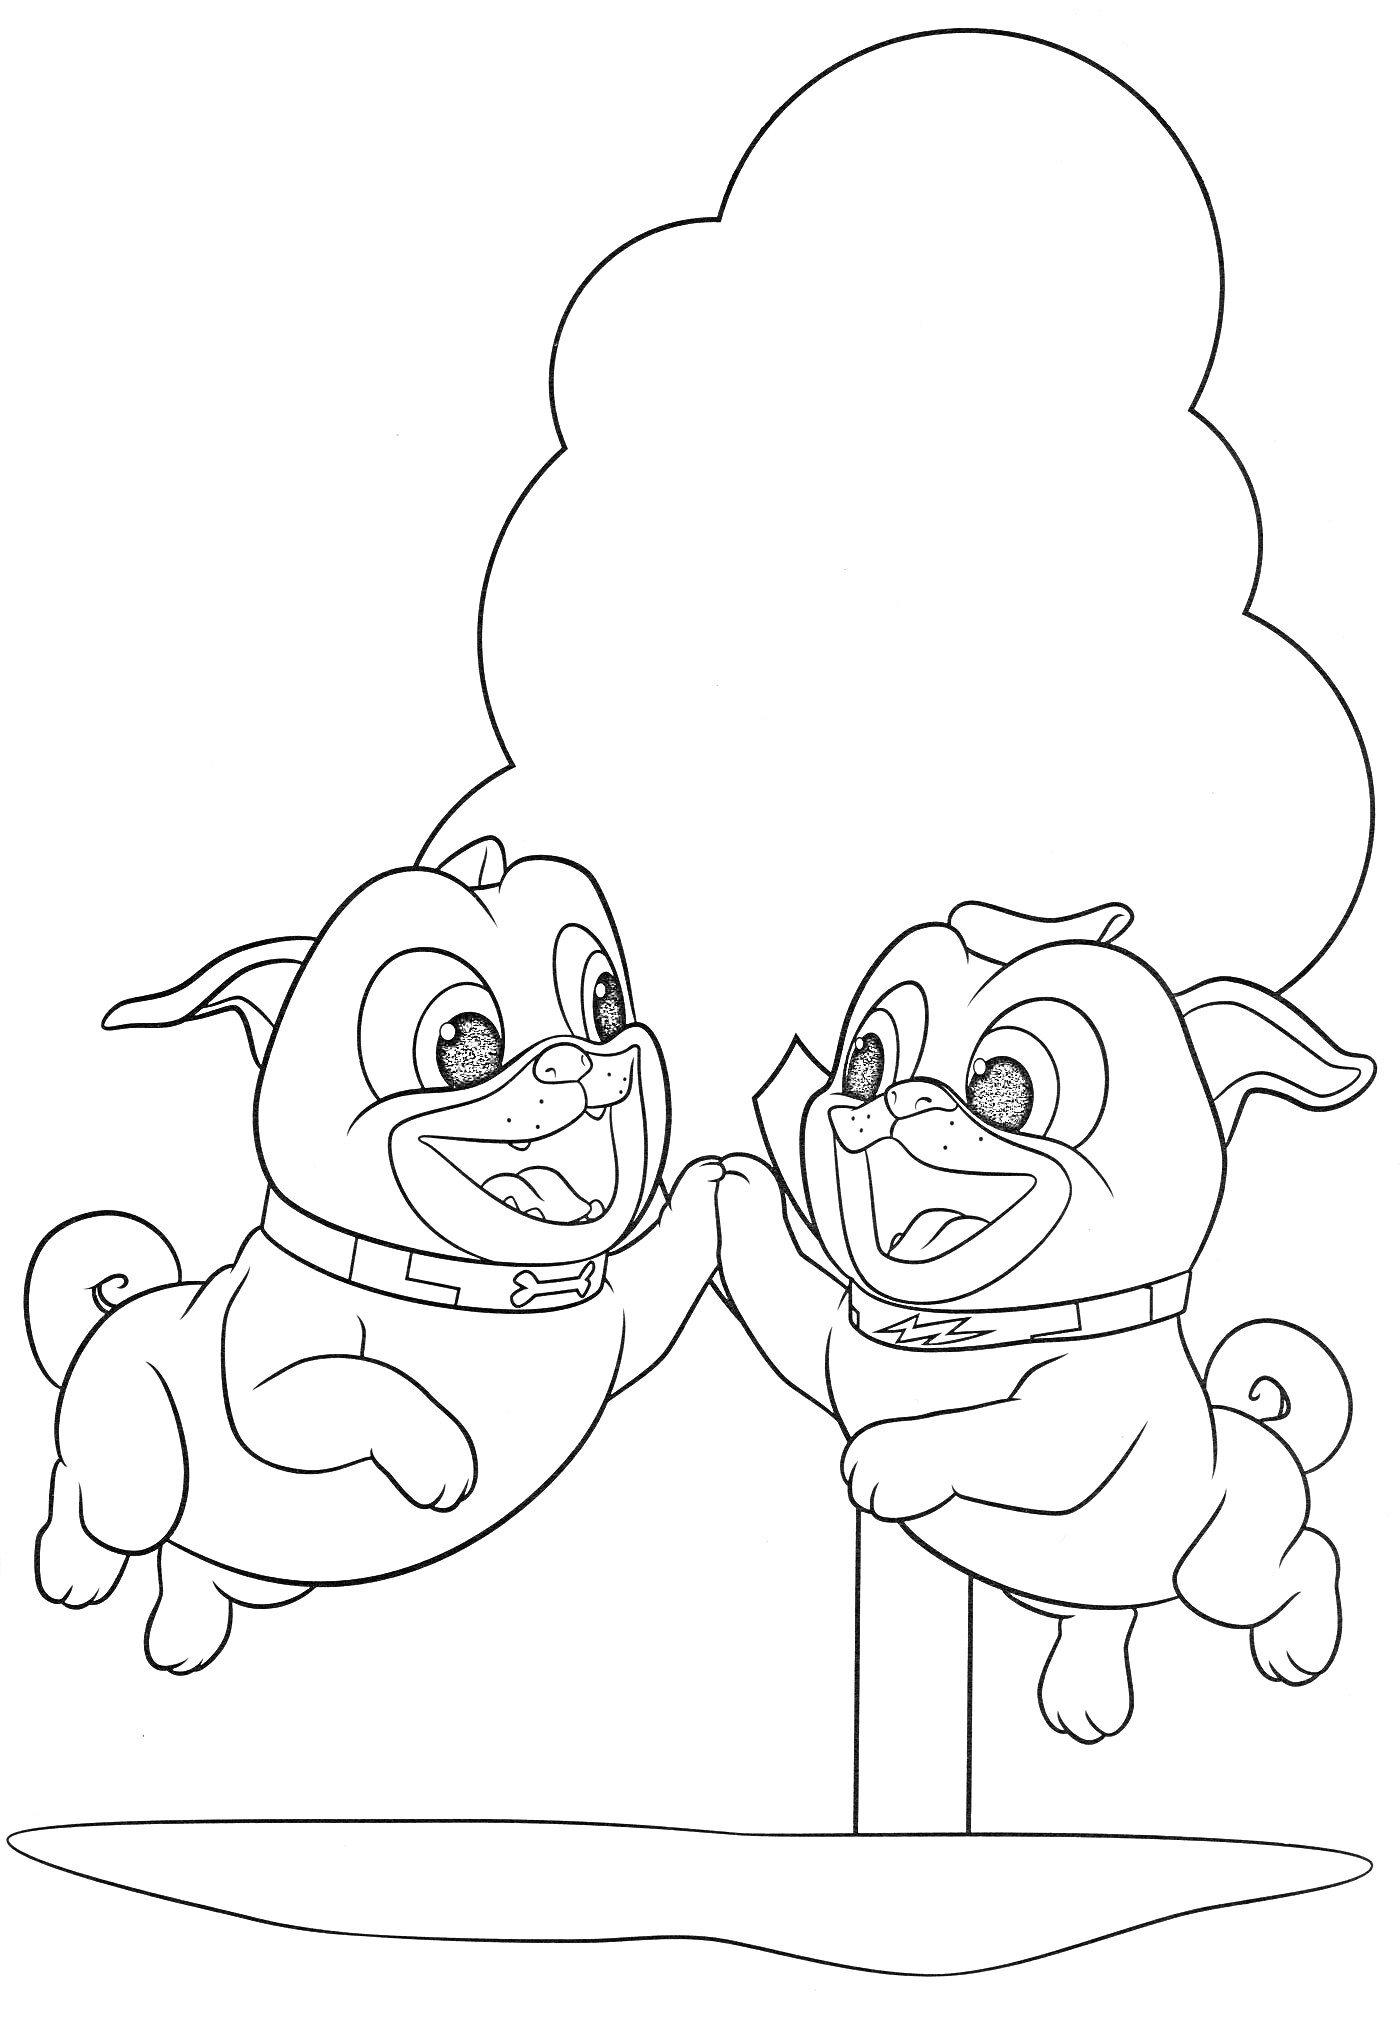 Раскраска Два дружелюбных мопса прыгают вместе возле дерева